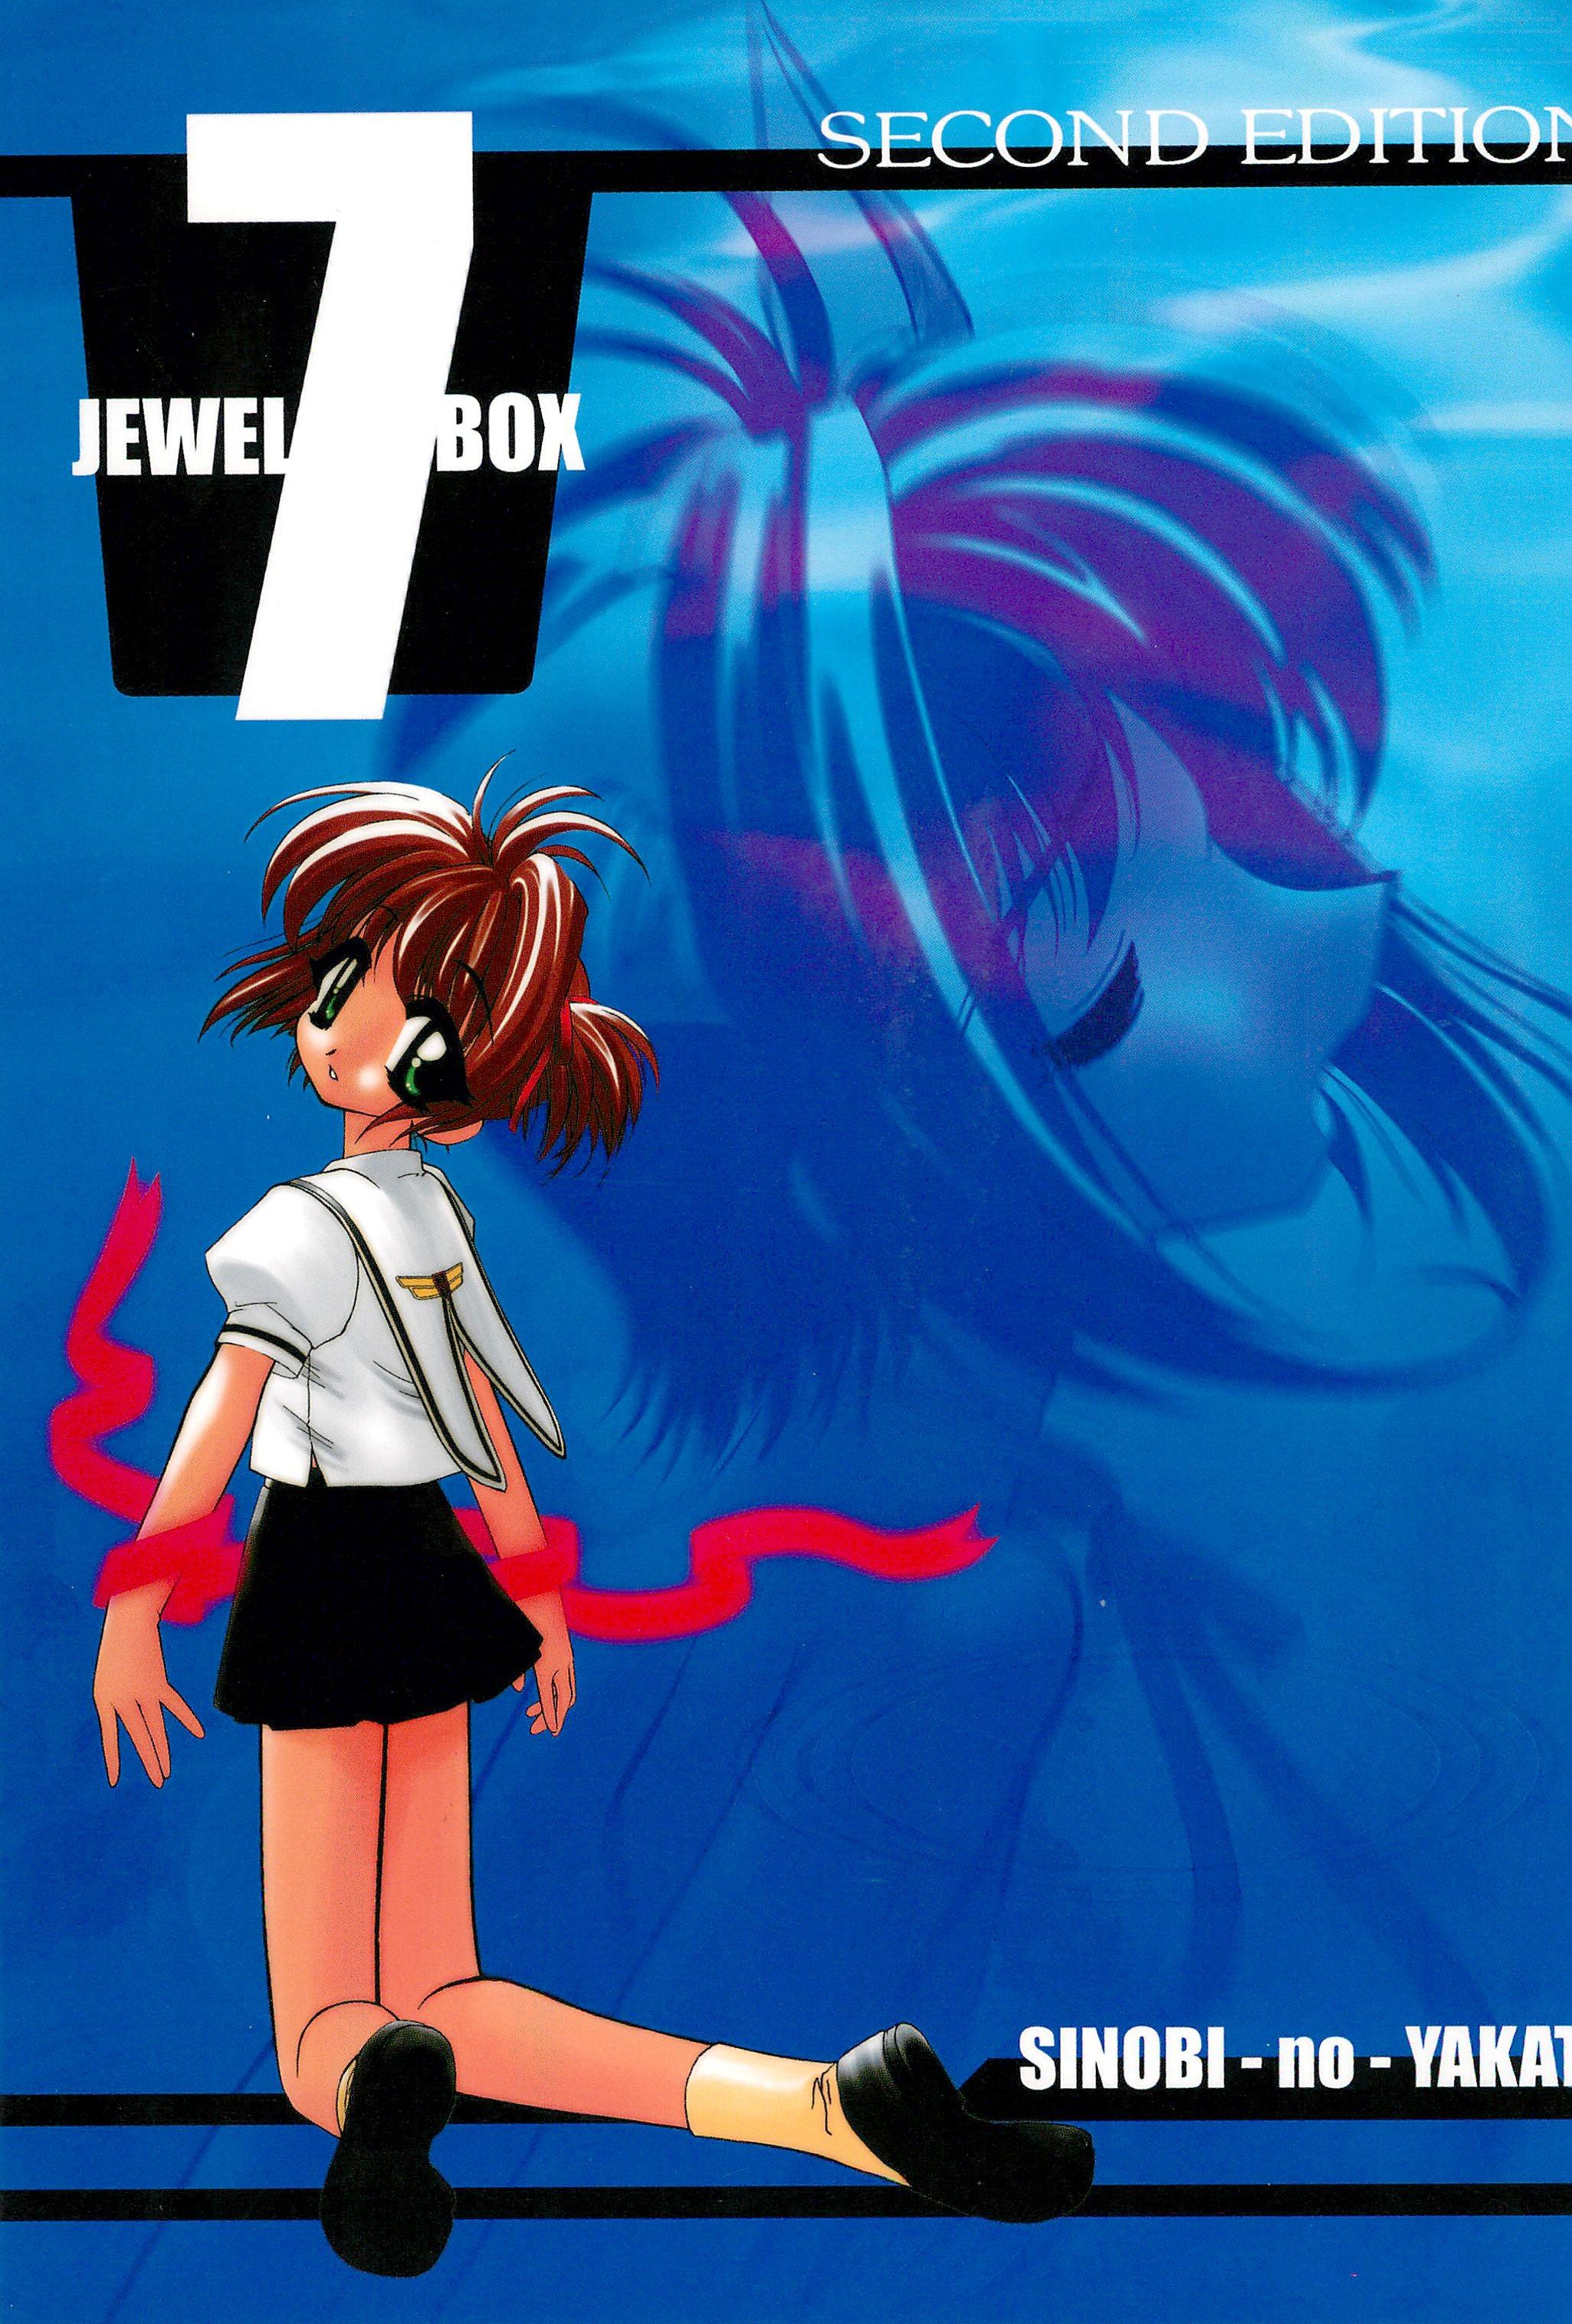 [Shinobi no Yakata (Iwama Yoshiki) JEWEL BOX 7 -SECOND EDITION- (CardCaptor Sakura) [1997-07-31] 0